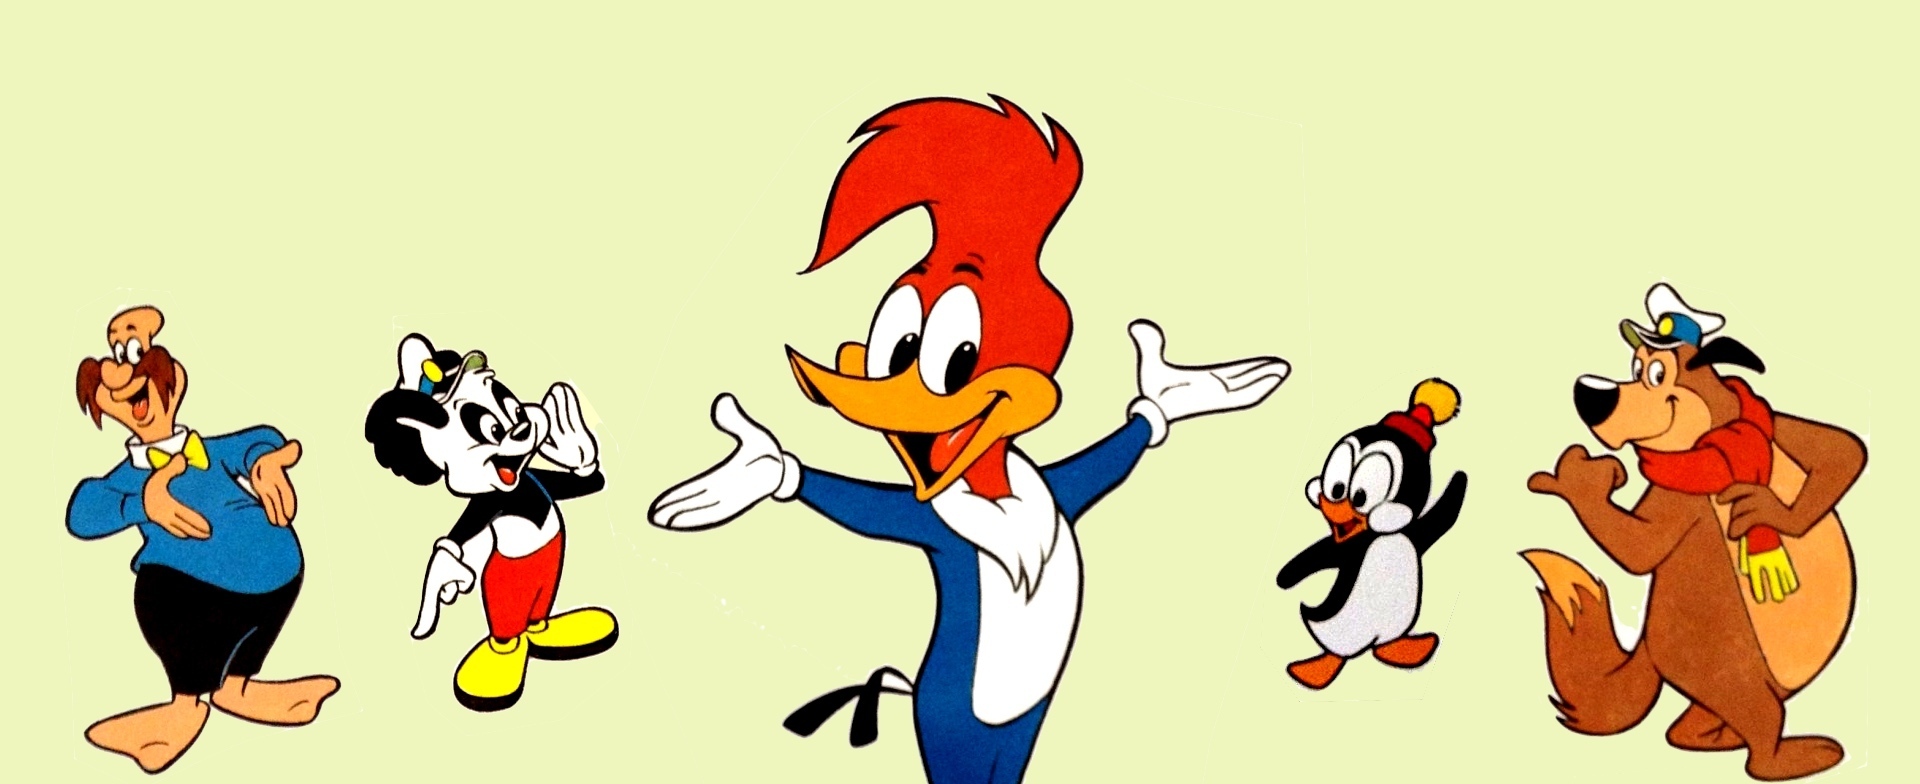 Animación Retro: Woody Woodpecker/ El Pájaro Loco y la historia de Walter  Lantz